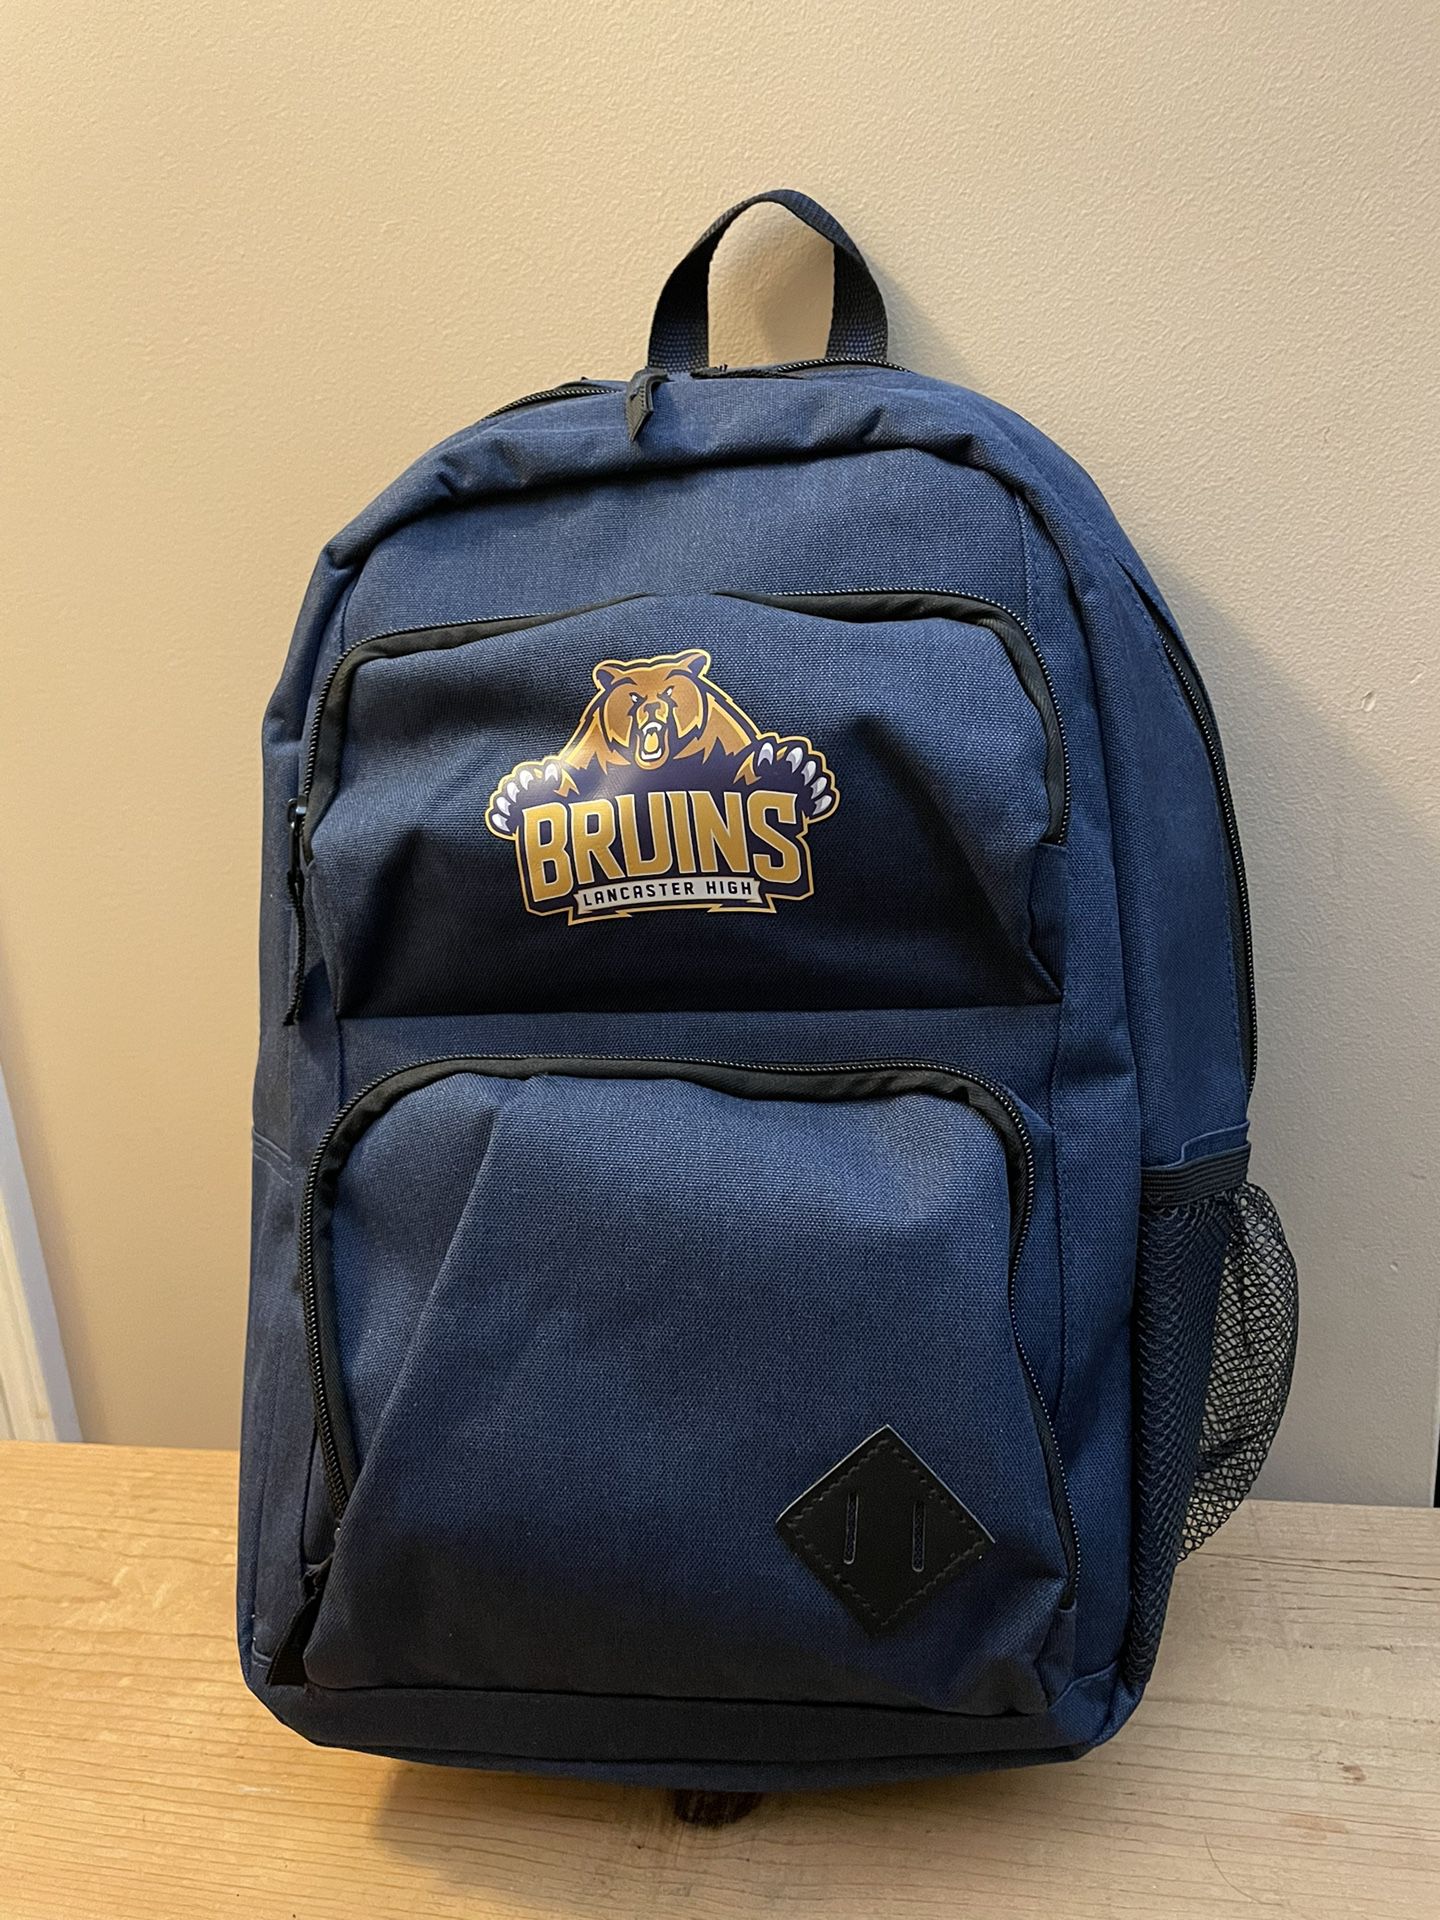 NEW Backpack Bookbag Lancaster High Bruins